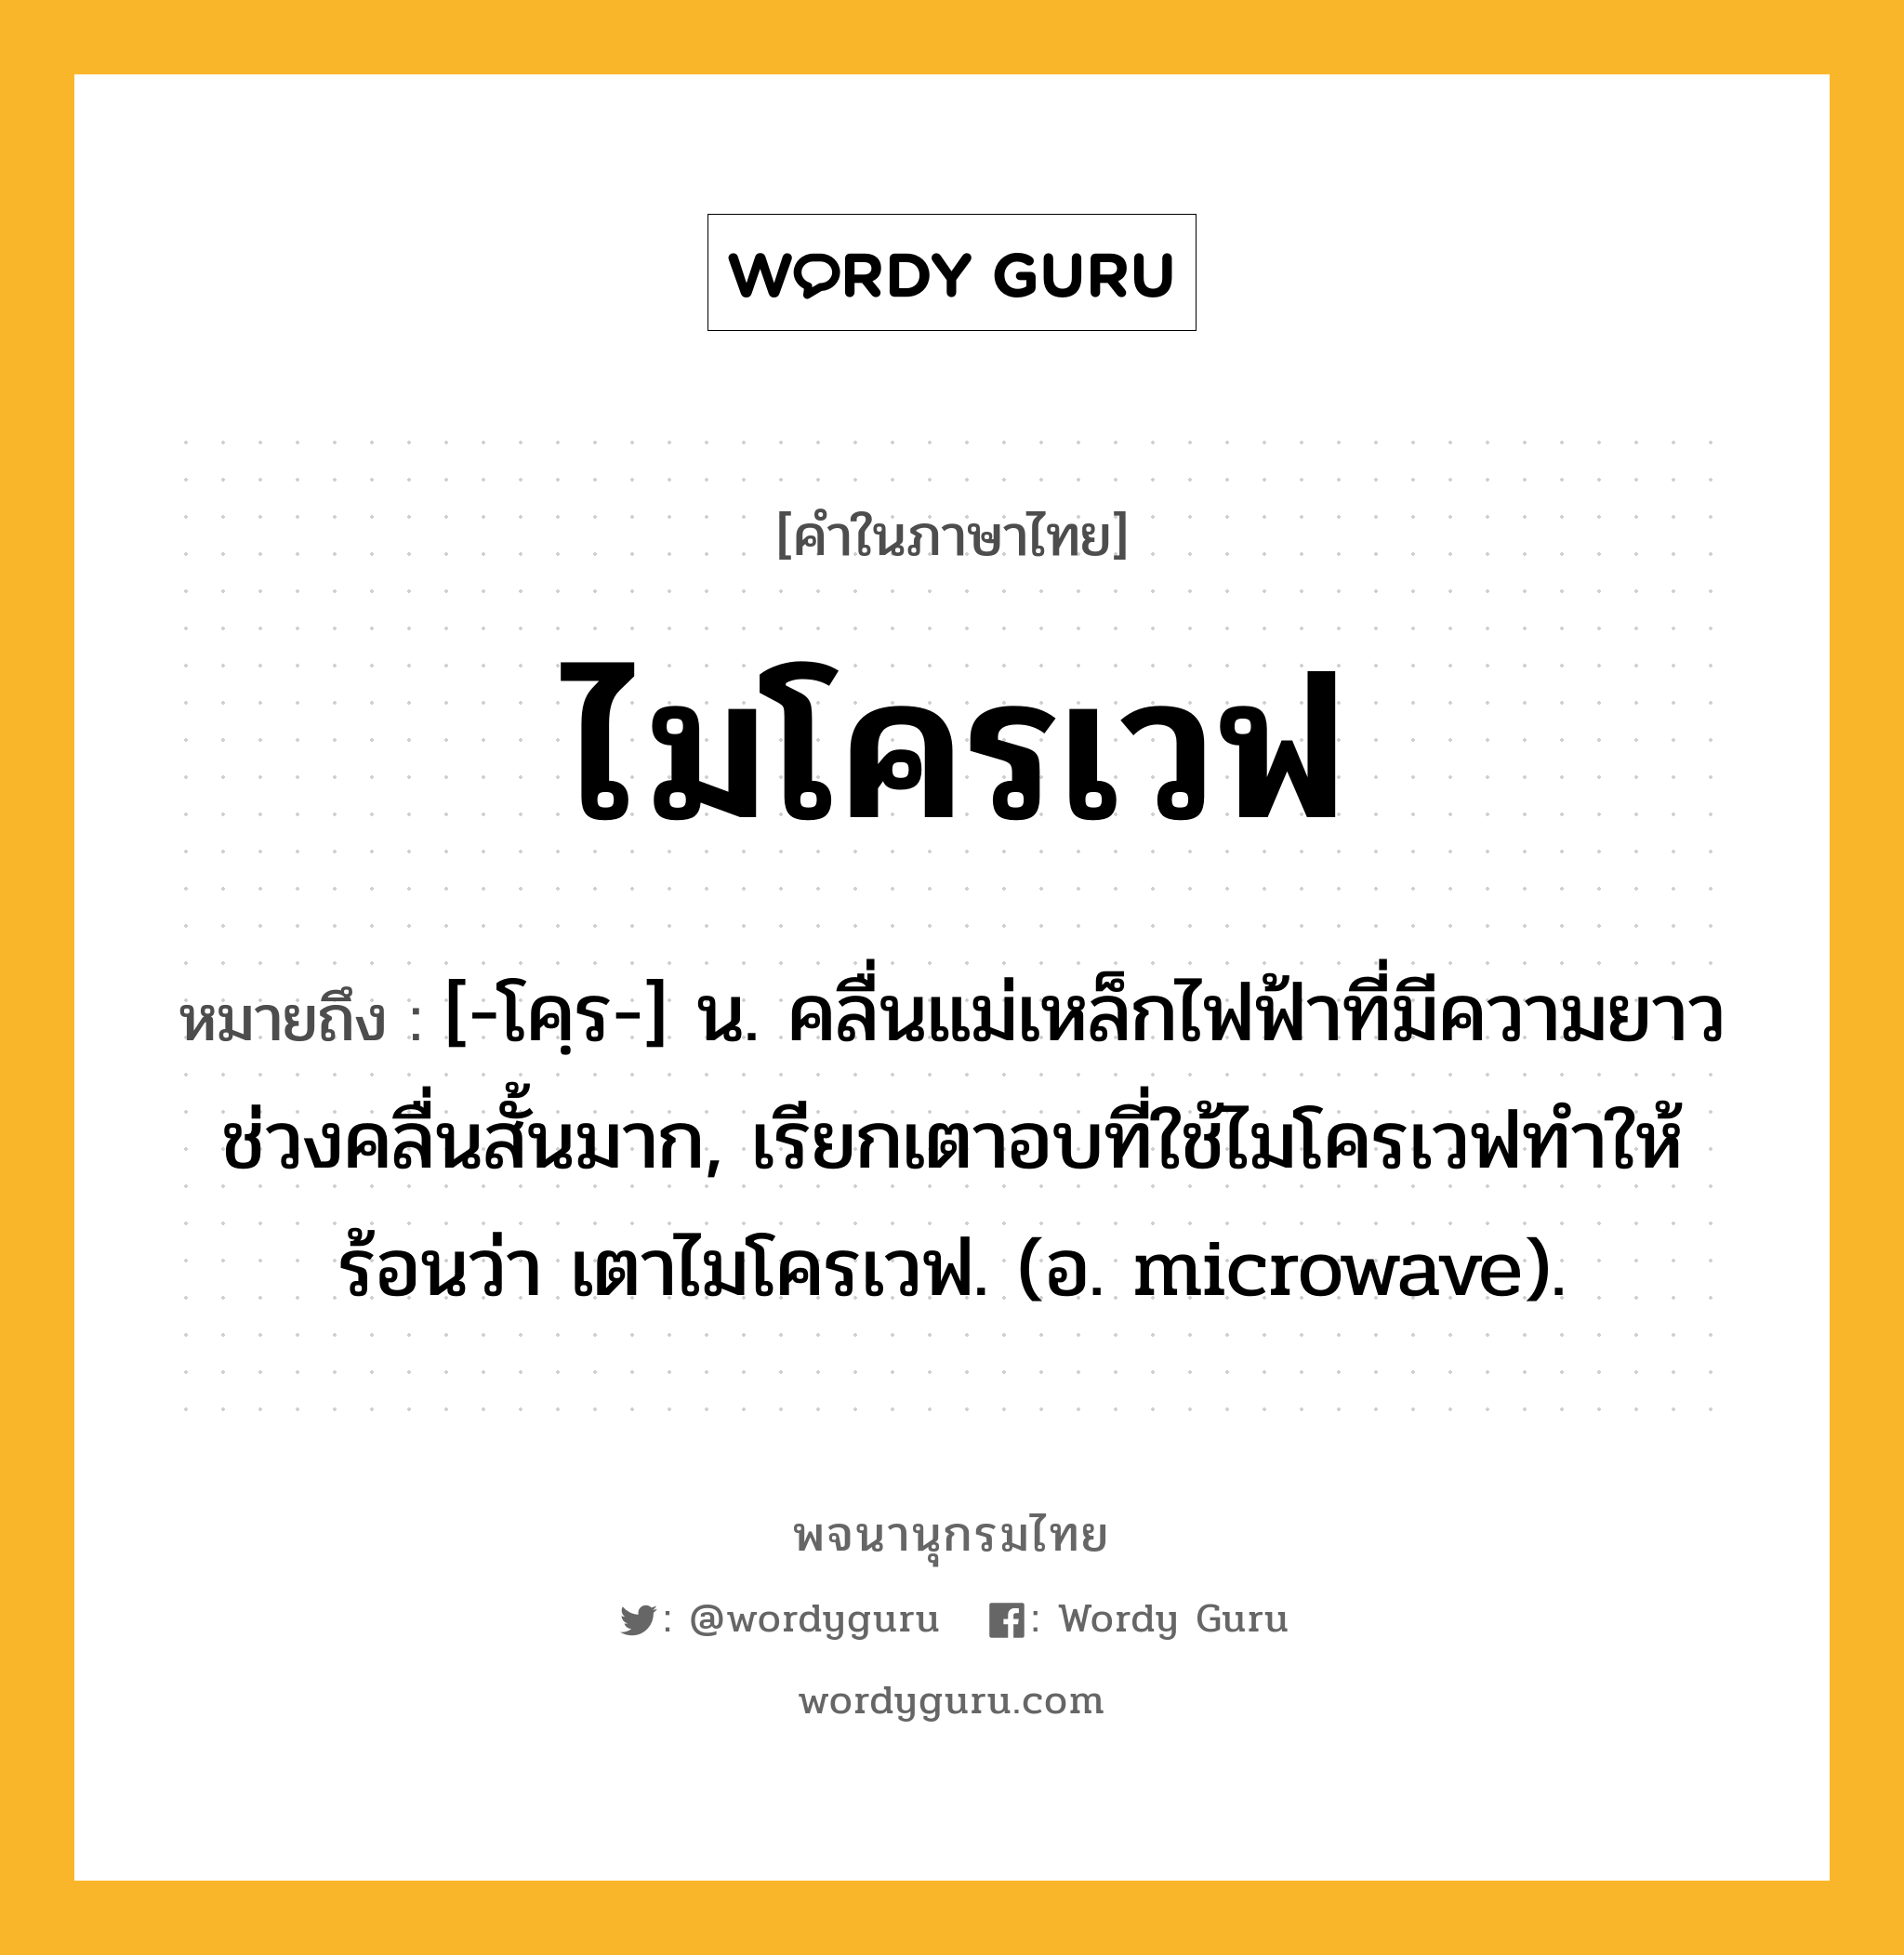 ไมโครเวฟ หมายถึงอะไร?, คำในภาษาไทย ไมโครเวฟ หมายถึง [-โคฺร-] น. คลื่นแม่เหล็กไฟฟ้าที่มีความยาวช่วงคลื่นสั้นมาก, เรียกเตาอบที่ใช้ไมโครเวฟทำให้ร้อนว่า เตาไมโครเวฟ. (อ. microwave).